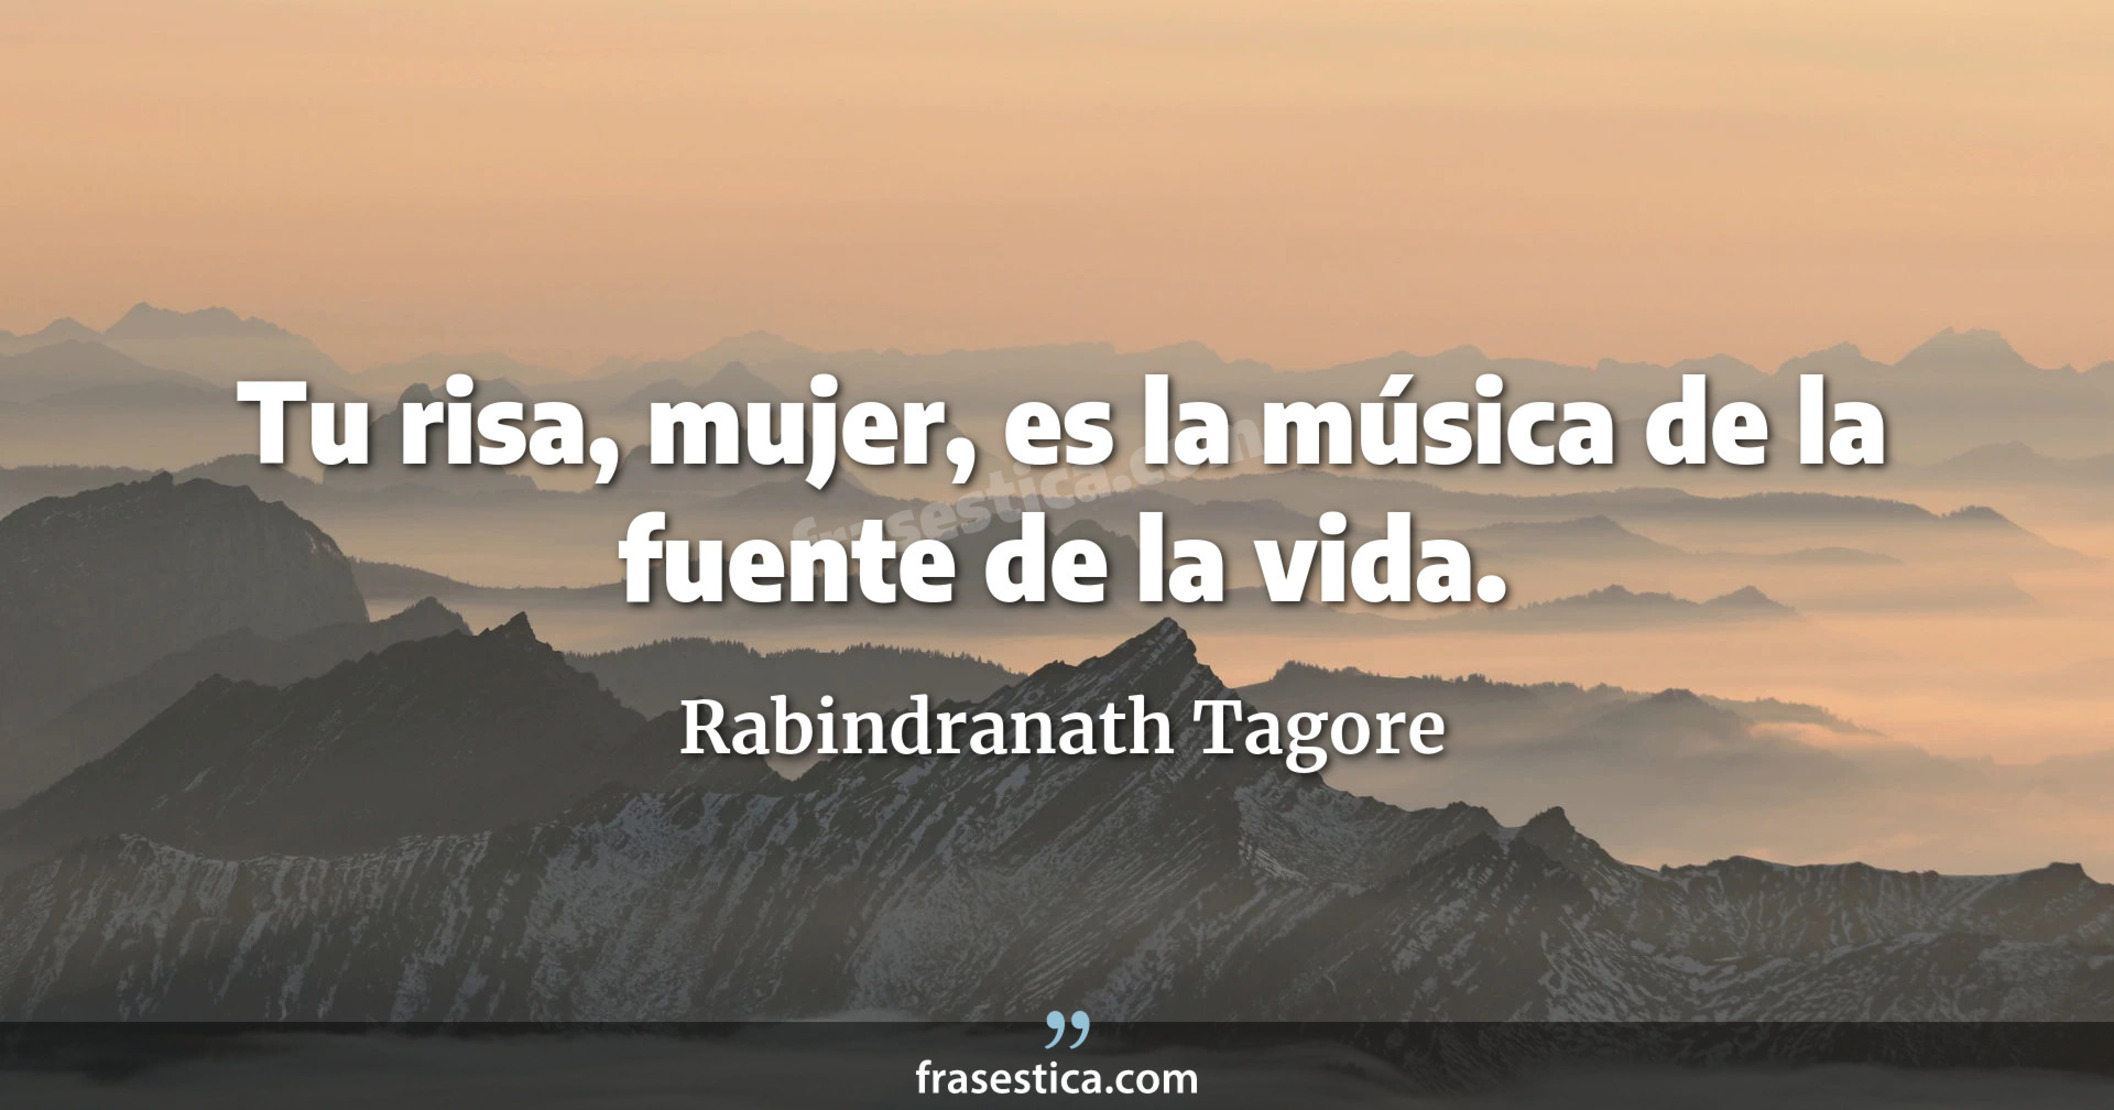 Tu risa, mujer, es la música de la fuente de la vida. - Rabindranath Tagore